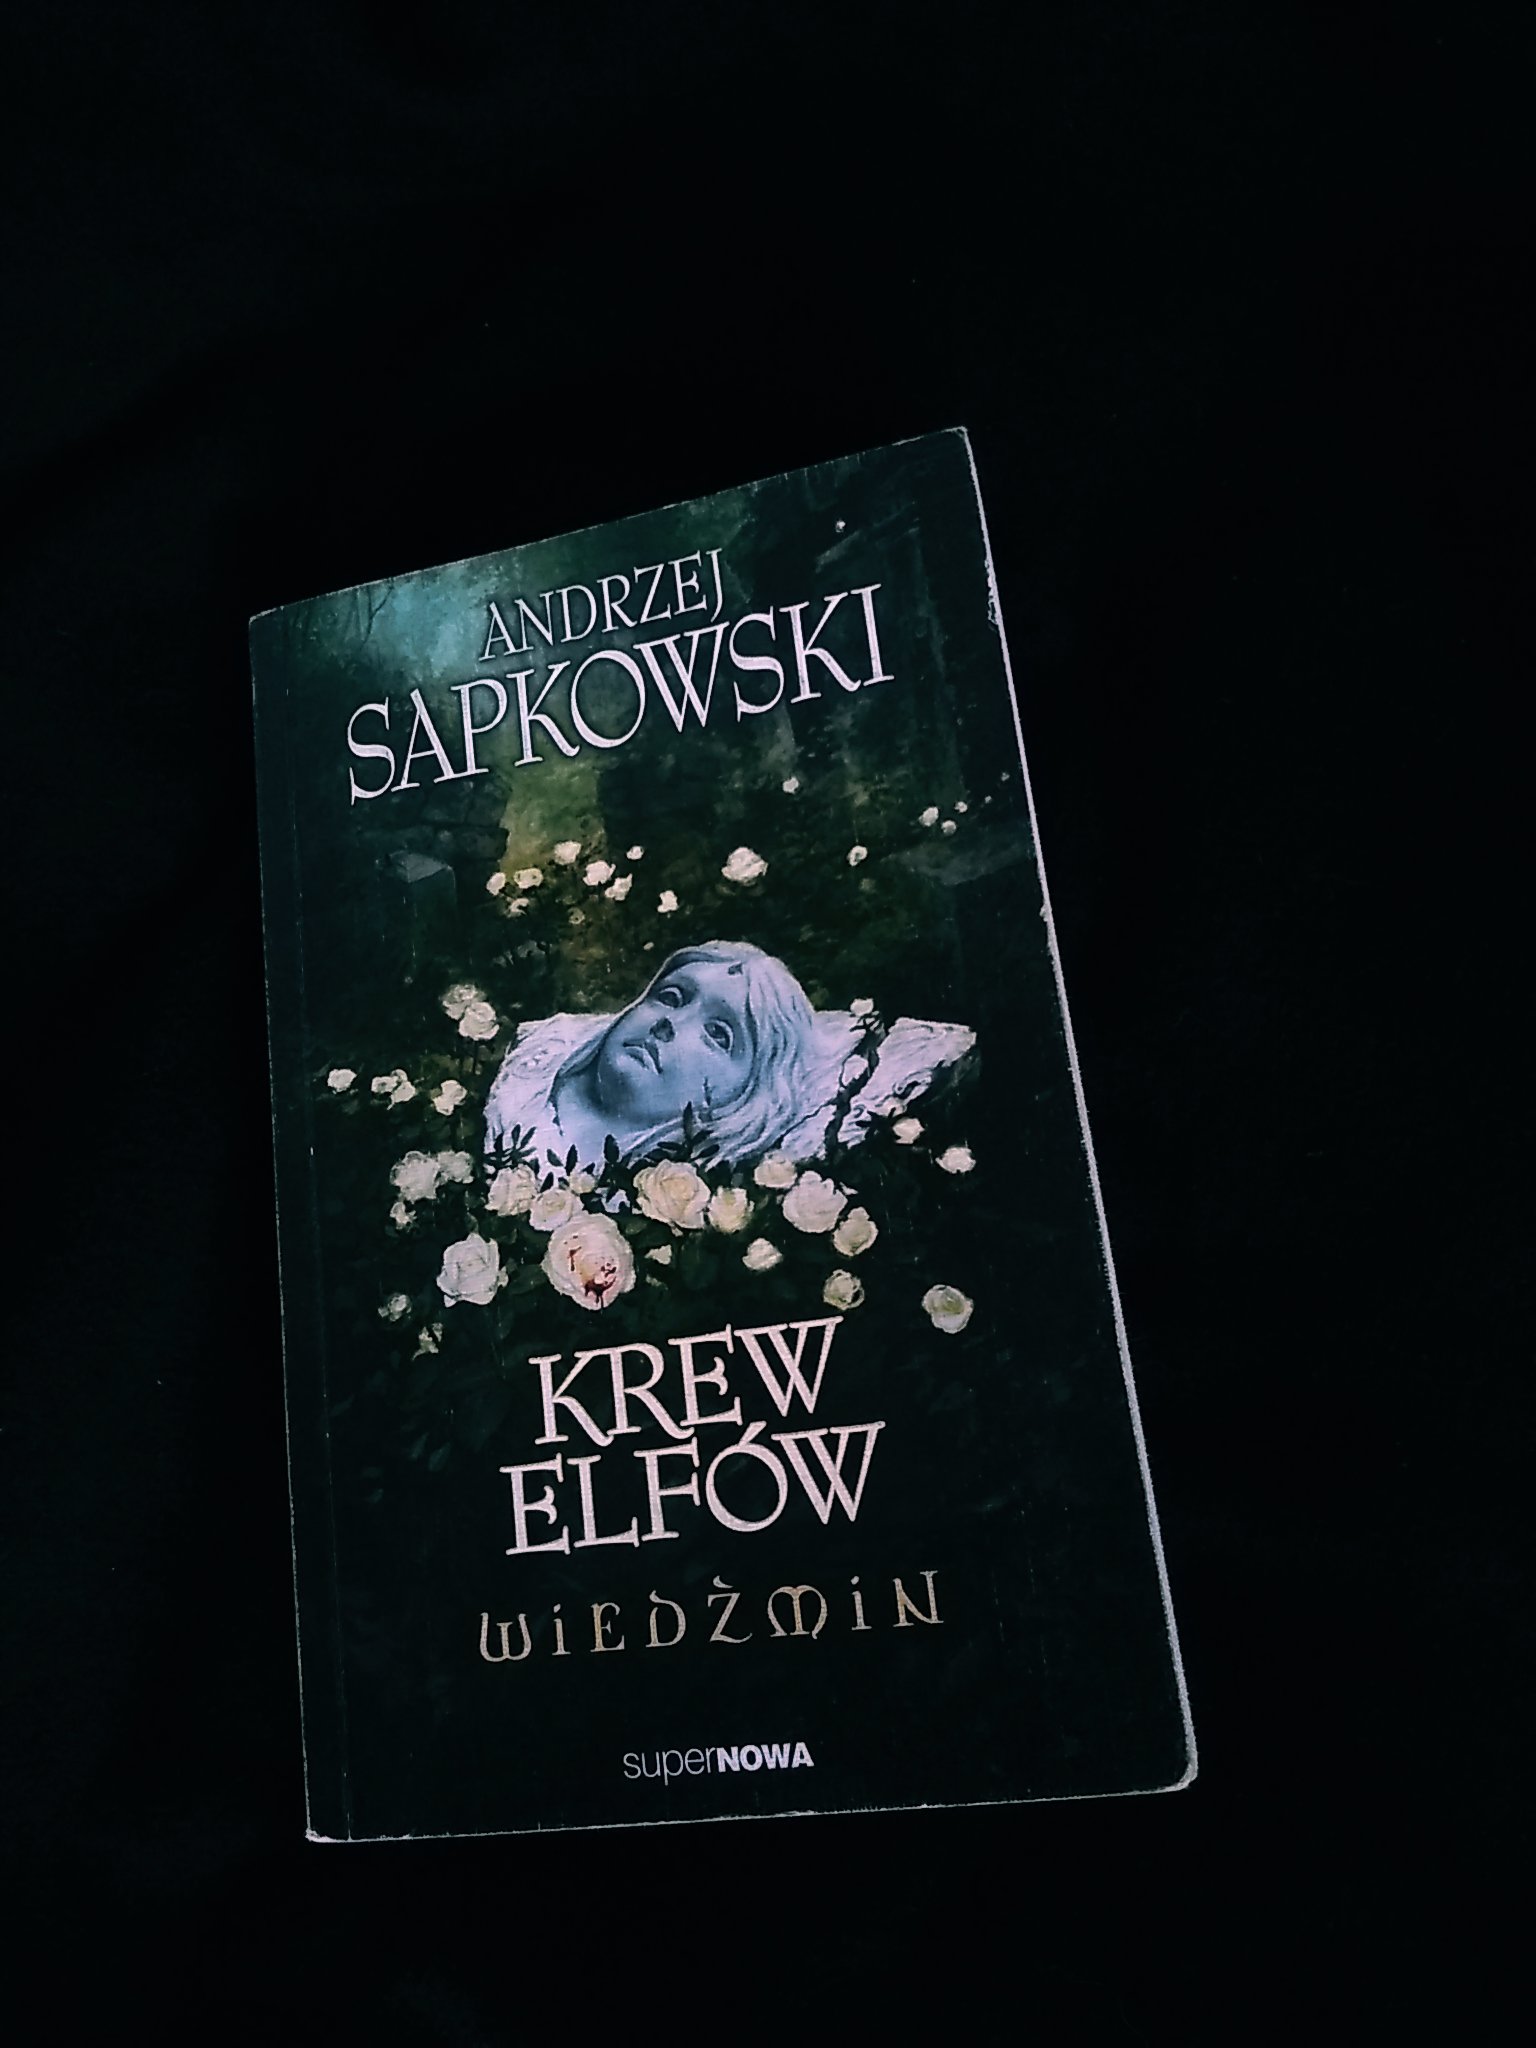 okładka książki Andrzeja Sapkowskiego "Krew Elfów"